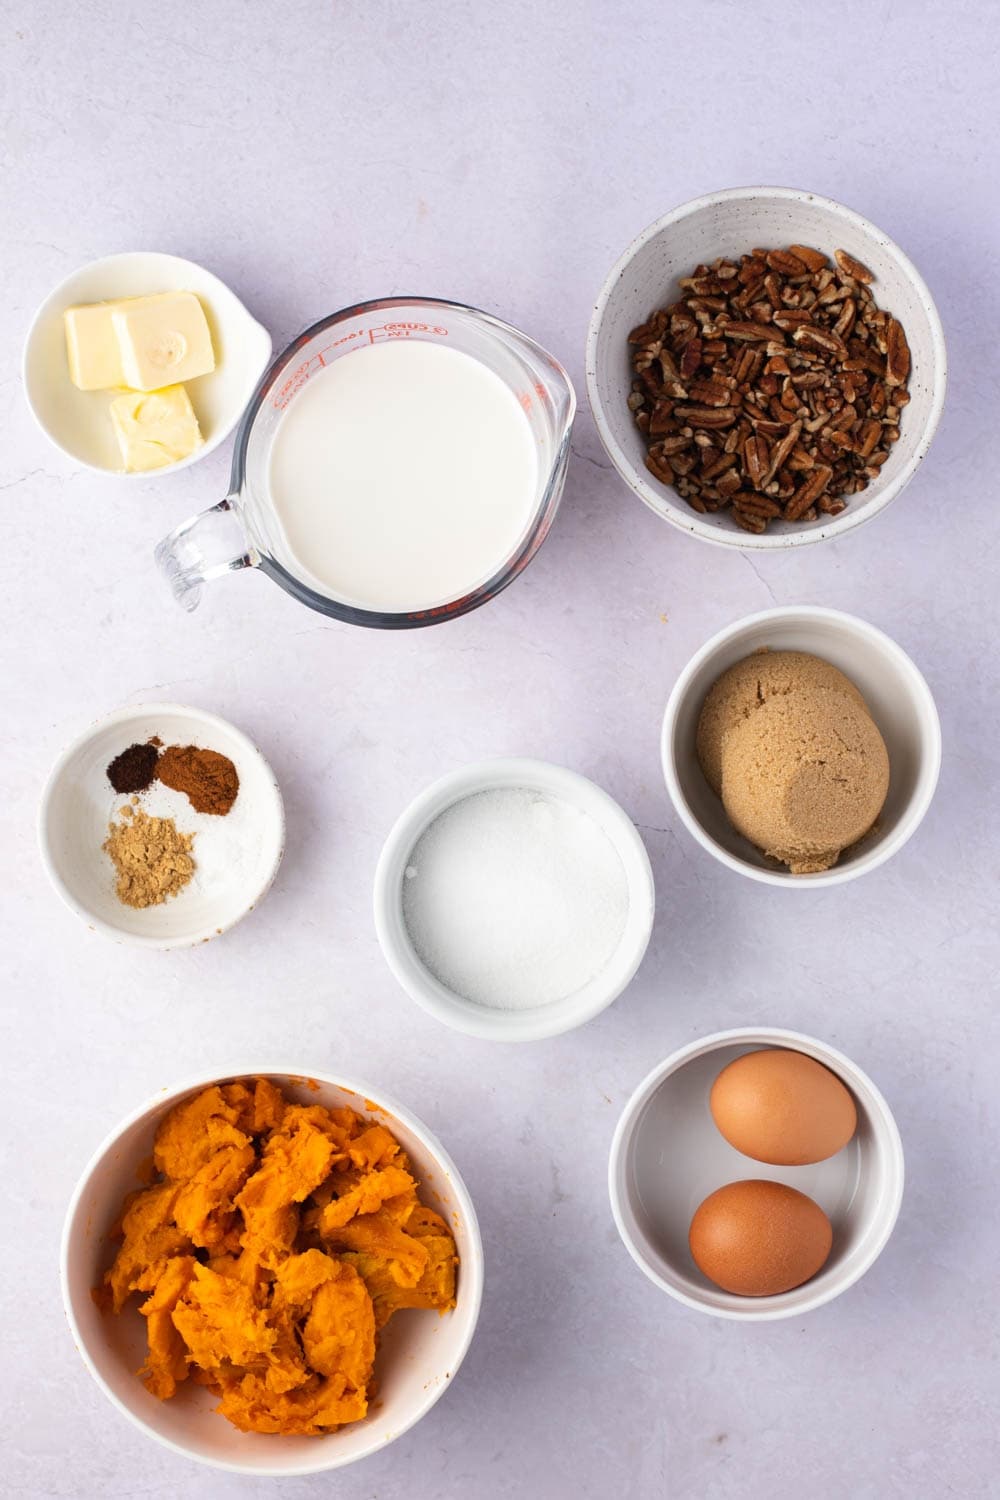 Sweet Potato Pecan Pie Ingredients - Pie Crust, Sweet Potatoes, Eggs, Salt, Light Cream, Pecan and Sugar